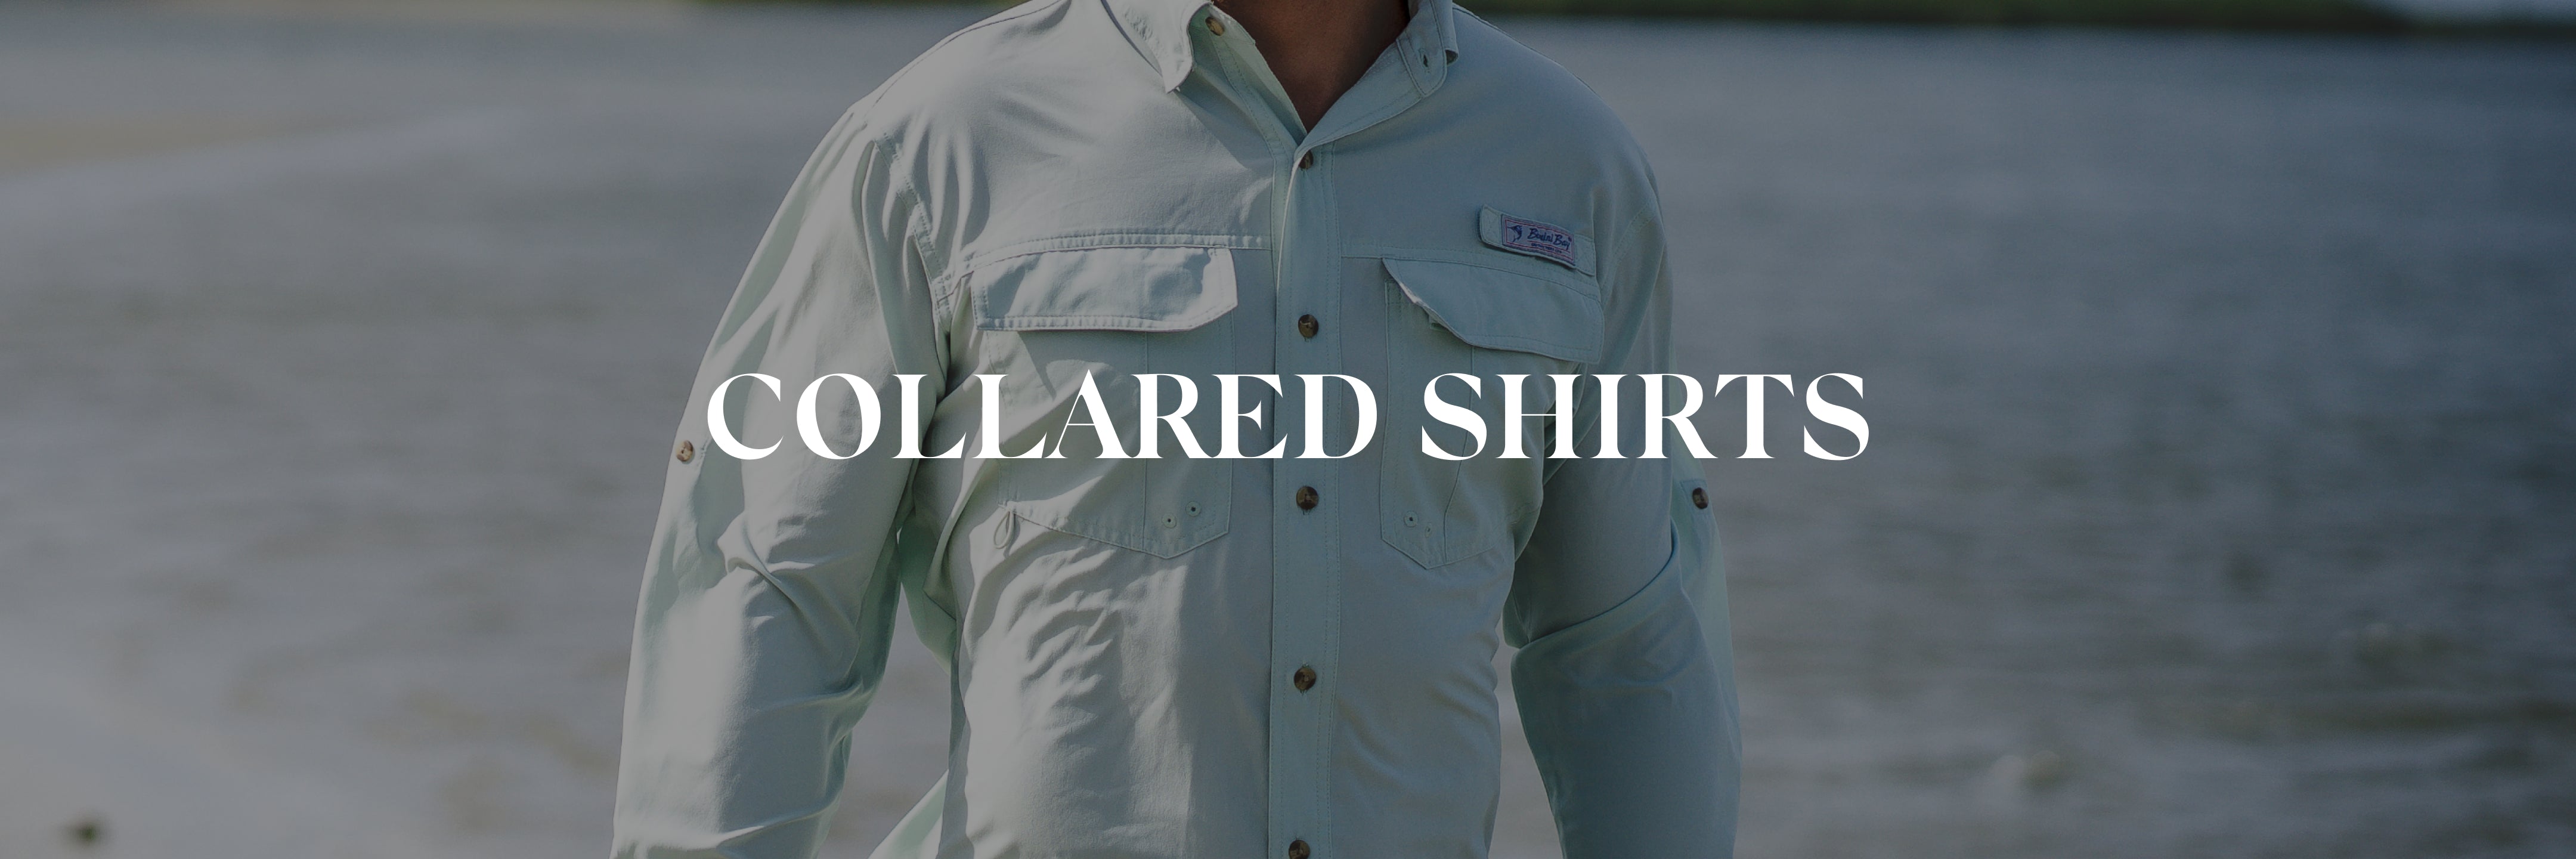 Collared Shirts